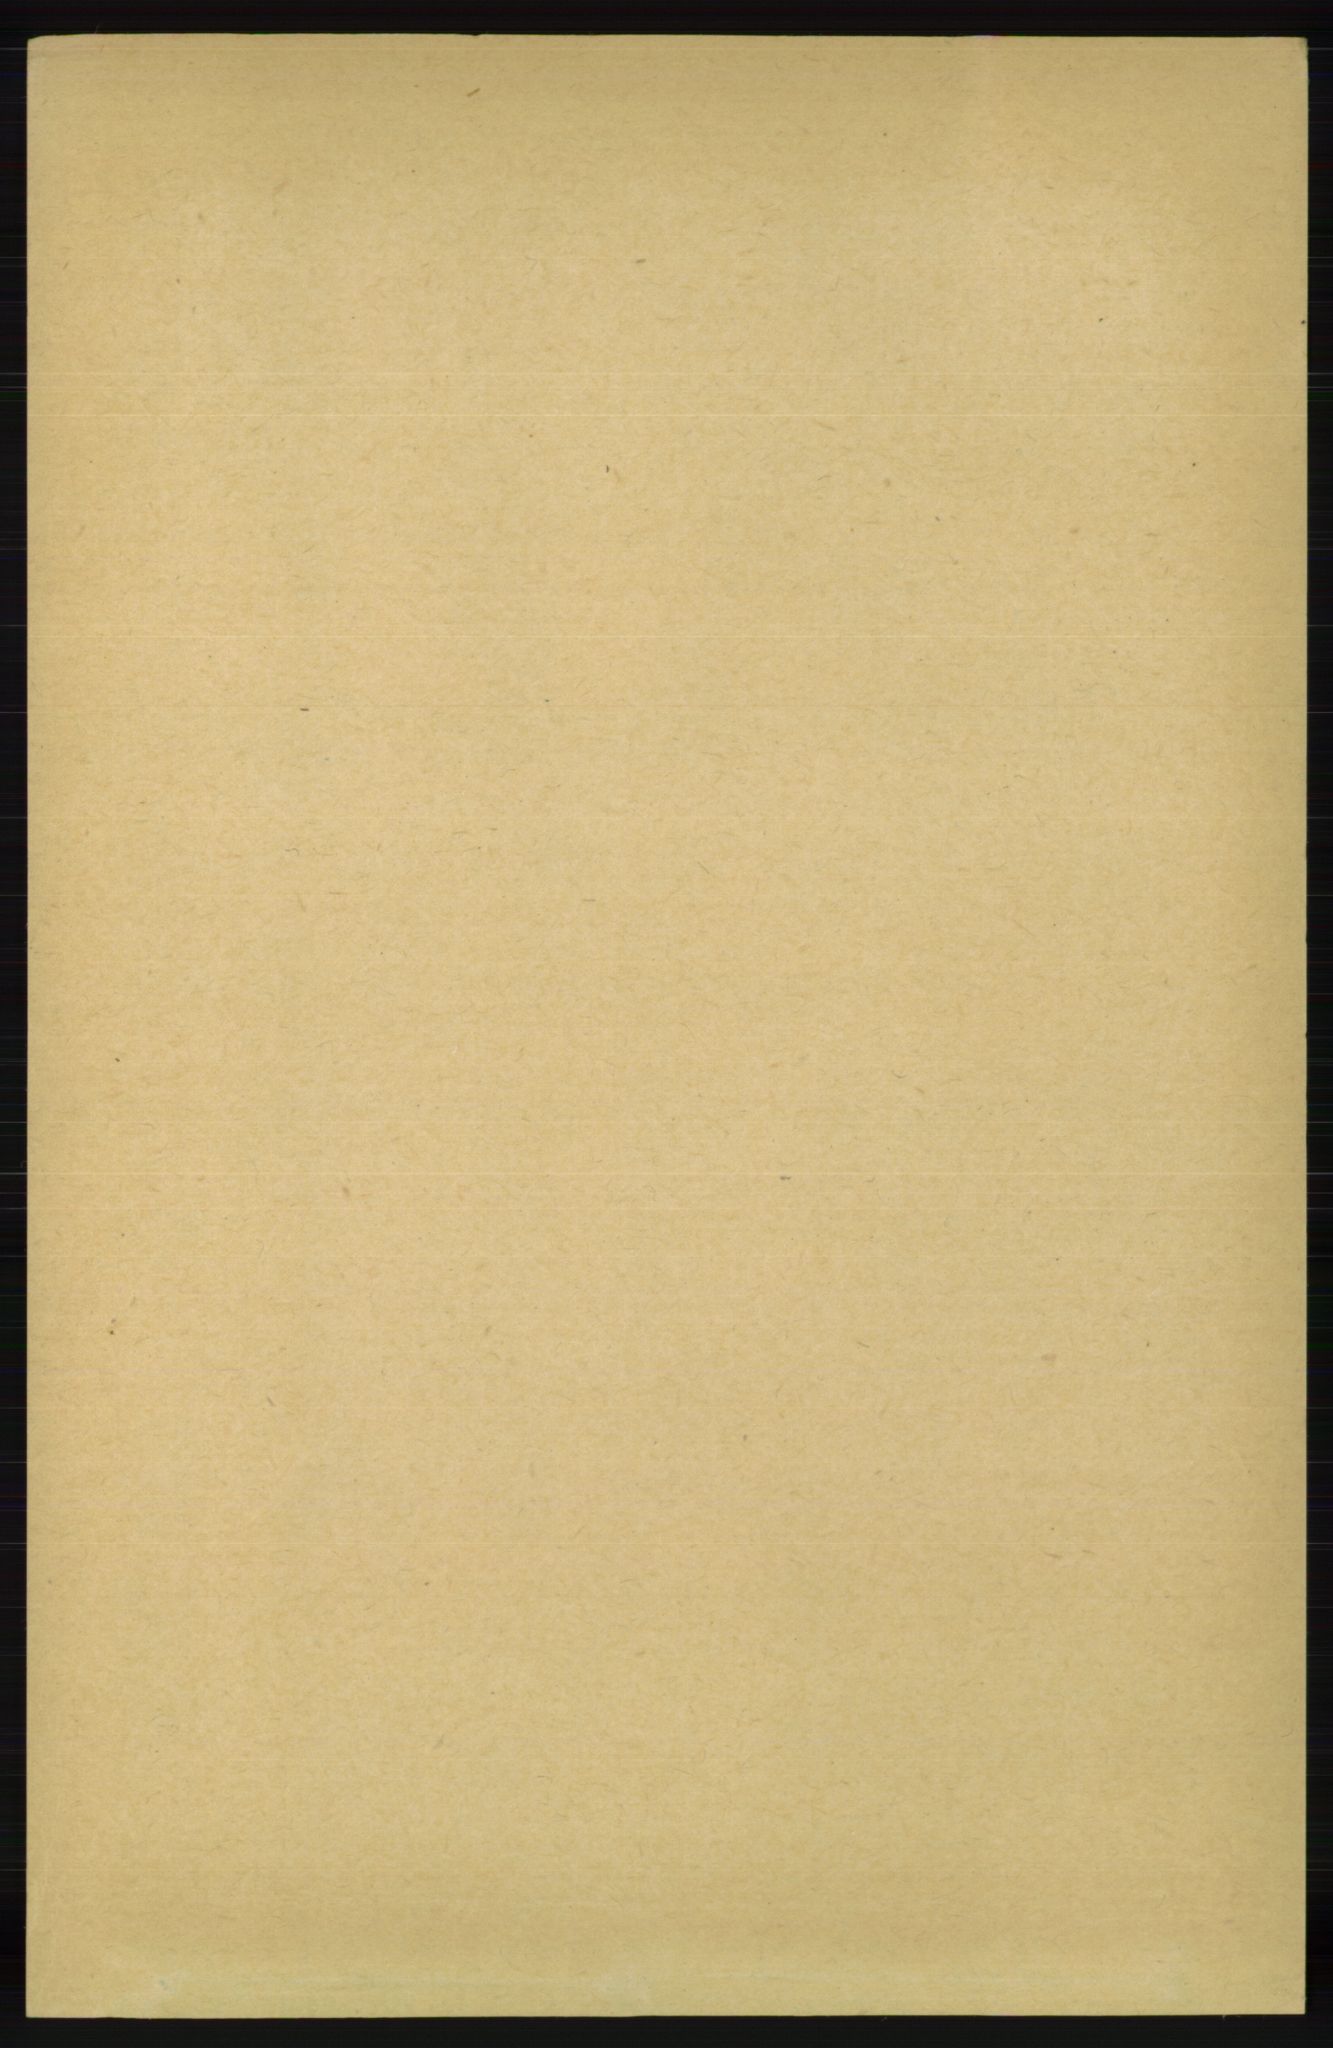 RA, Folketelling 1891 for 1039 Herad herred, 1891, s. 1417